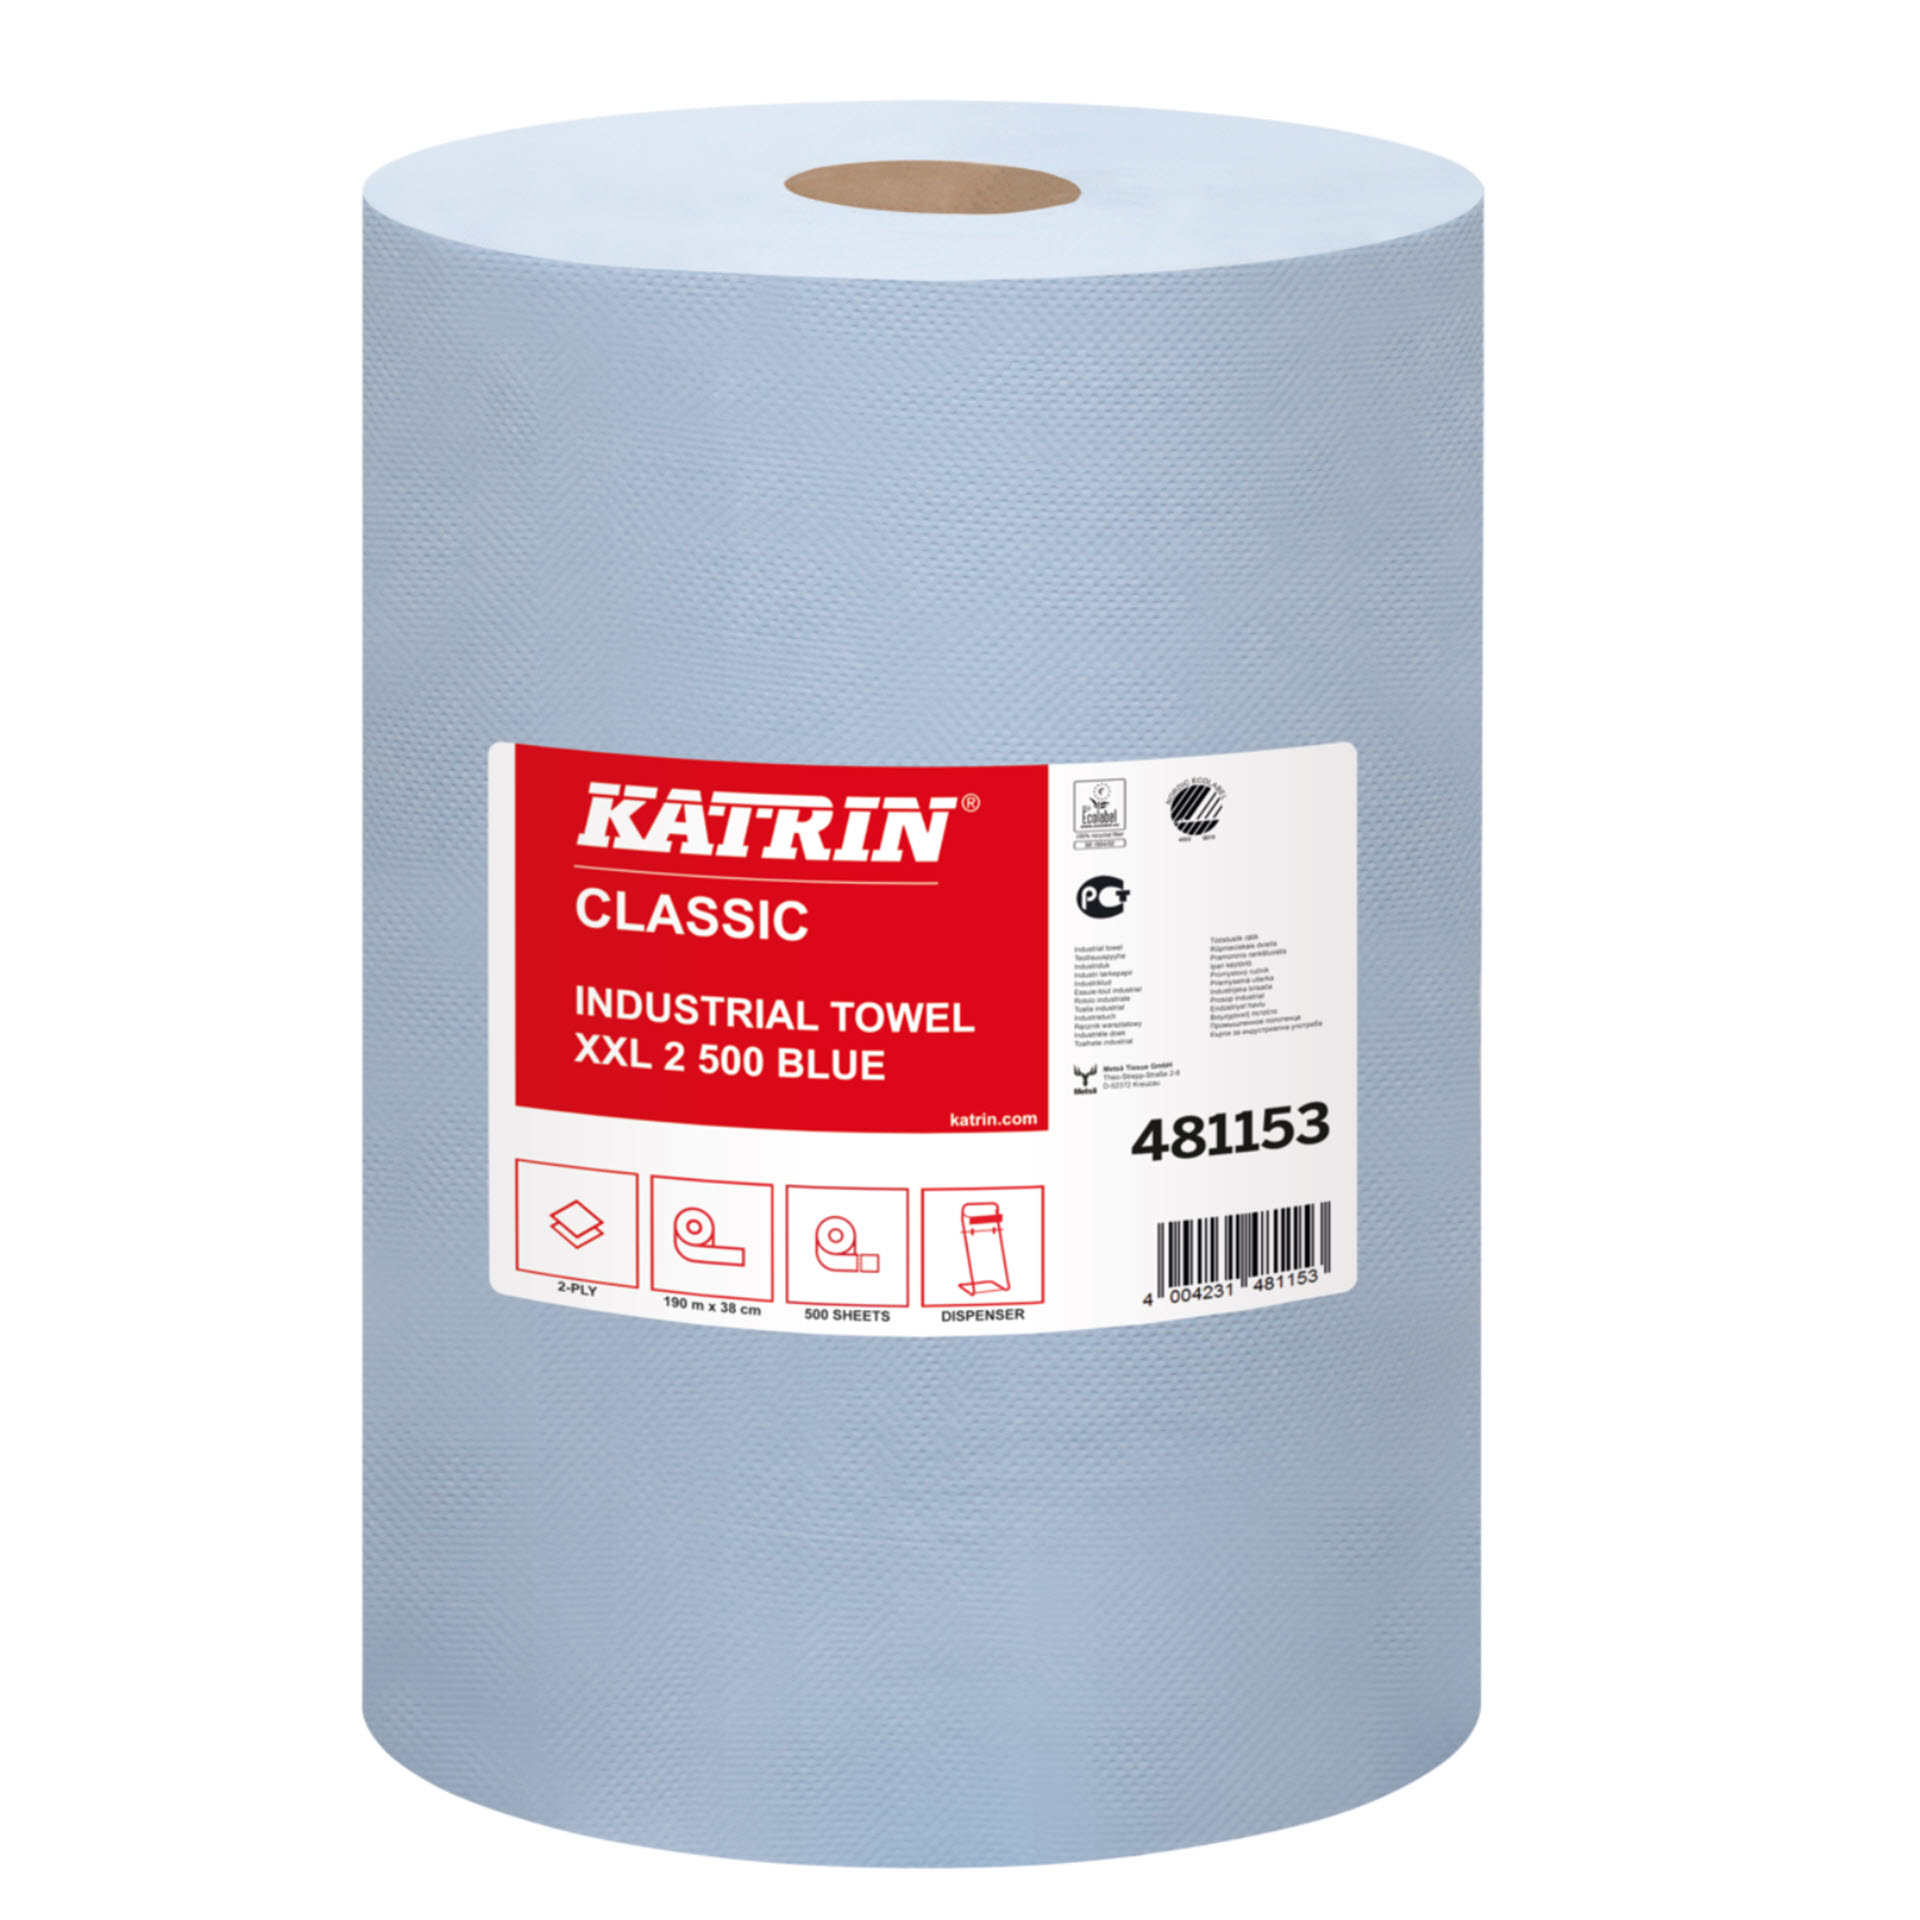 Katrin Classic Industrial Towel XXL2 Blue laminated - 481153 - Putztuch / Tissue-Wischtuch